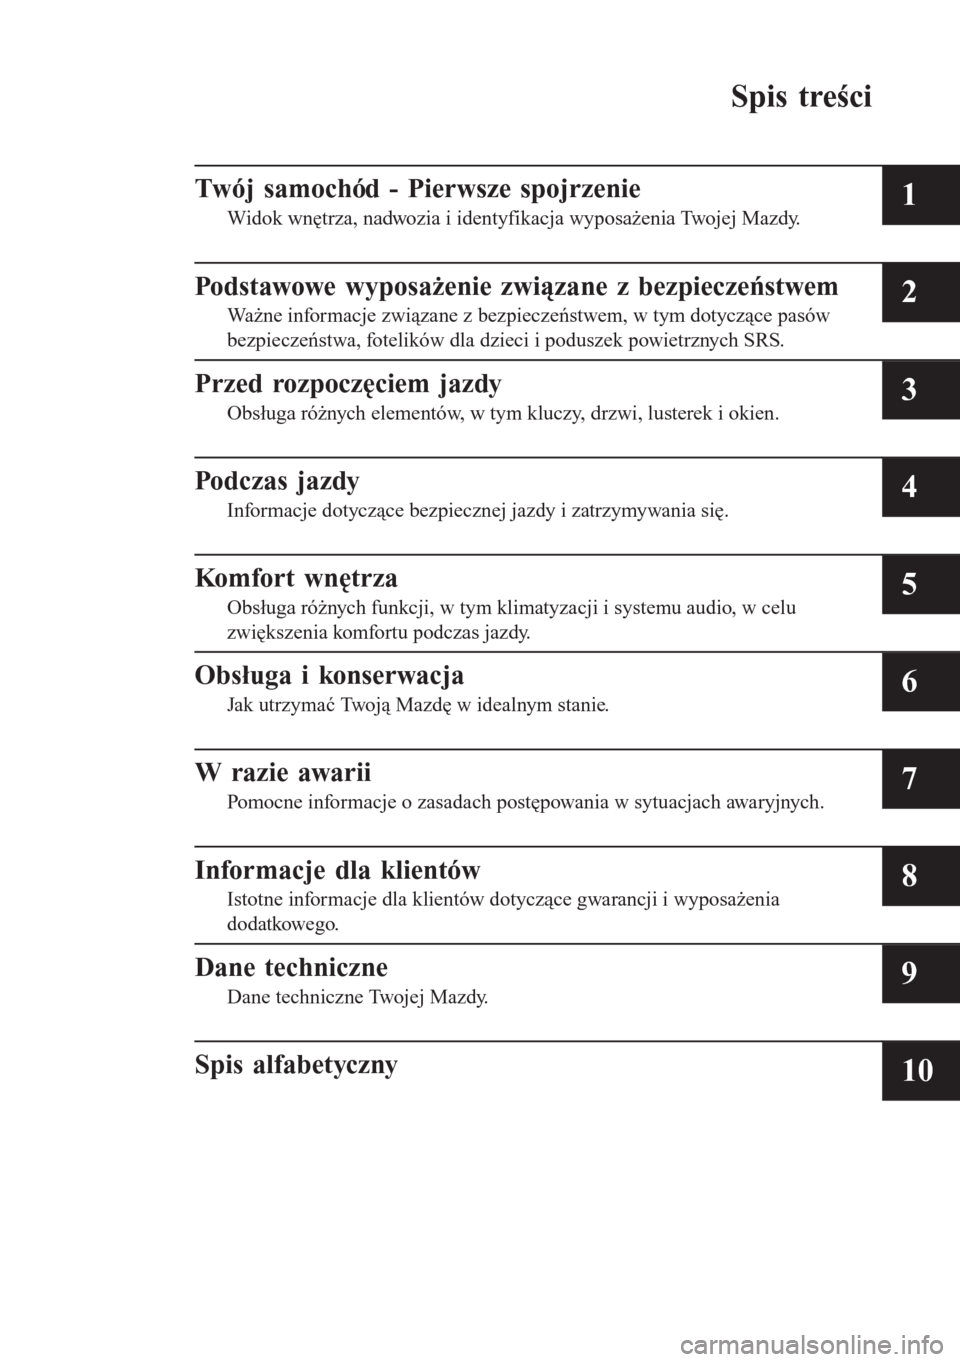 MAZDA MODEL 6 2016  Instrukcja Obsługi (in Polish)  Spis treści
Twój samochód - Pierwsze spojrzenie
Widok wnętrza, nadwozia i identyfikacja wyposażenia Twojej Mazdy.1
Podstawowe wyposażenie związane z bezpieczeństwem
Ważne informacje związane